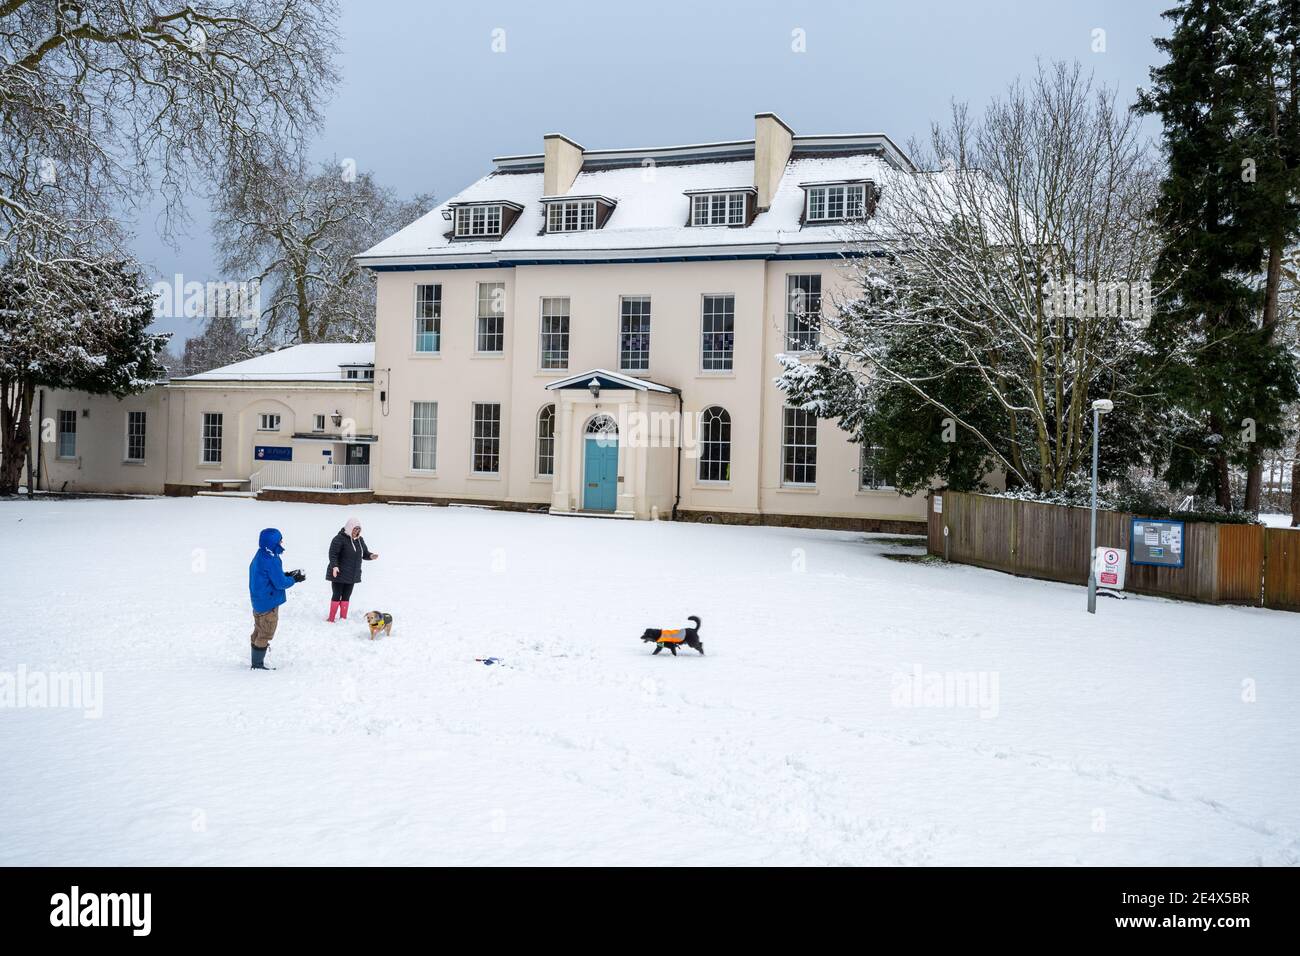 St Peter's School, ex Farnborough Place, una vecchia casa padronale, in gennaio o in inverno con neve, e persone con cani, Farnborough, Hampshire, Regno Unito Foto Stock